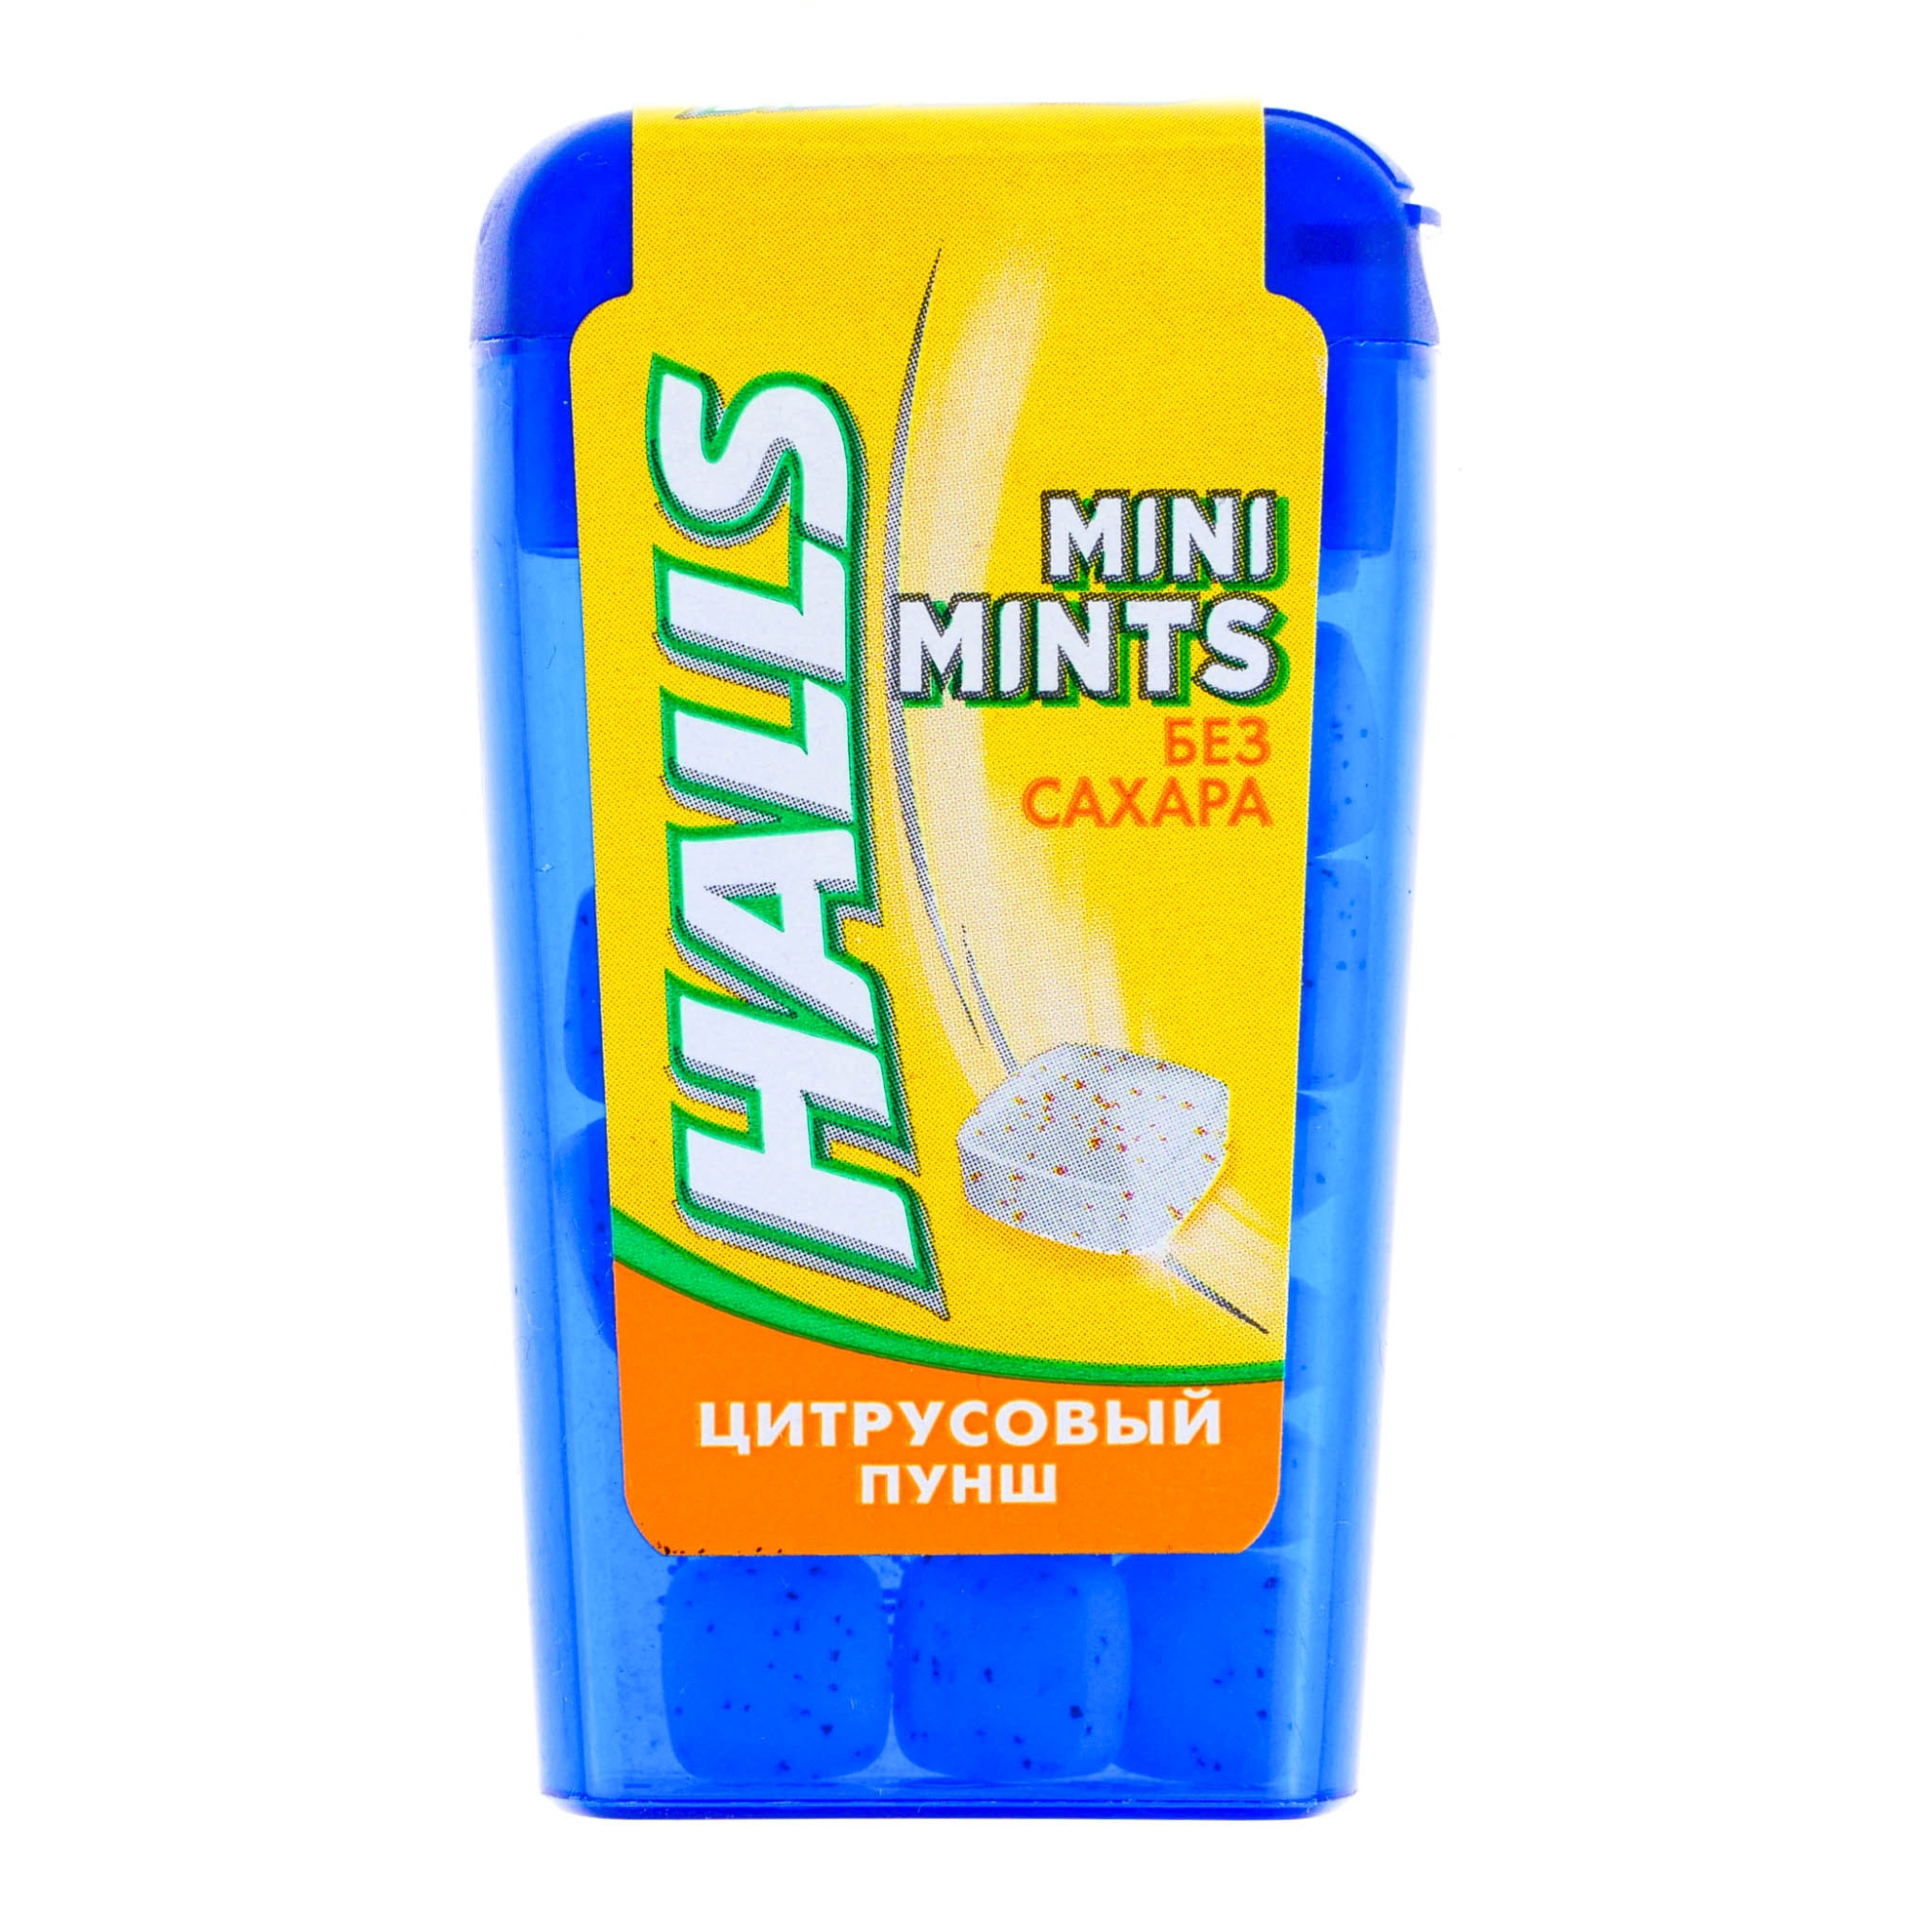 Конфеты Halls Mini Mints Цитрусовый пунш, 12,5 см конфеты mini mints halls цитрусовый пунш без сахара 12 5 г